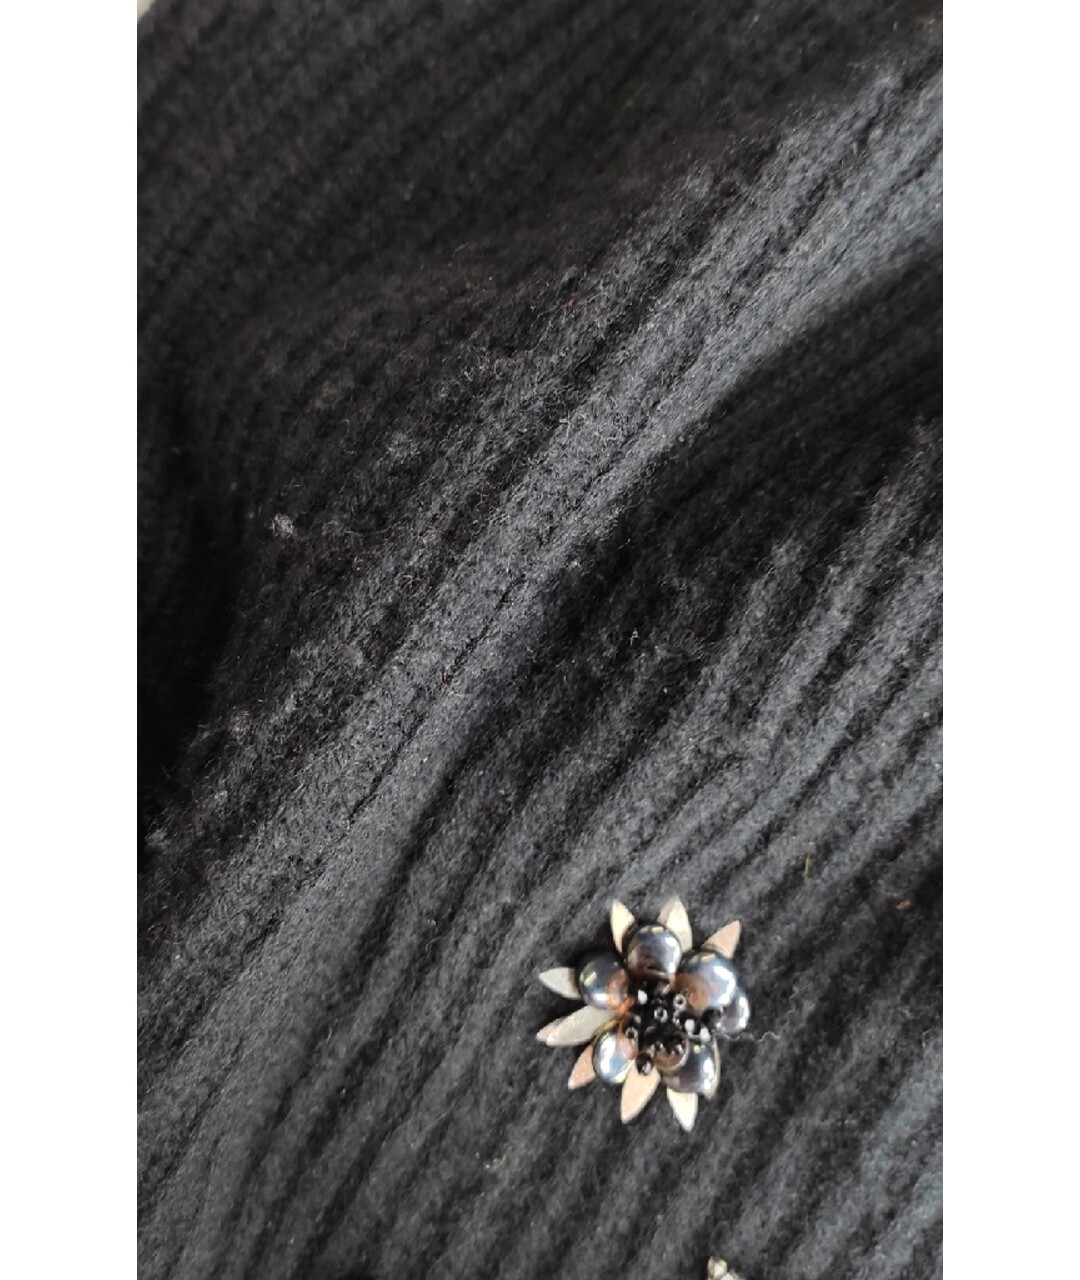 CHRISTIAN DIOR PRE-OWNED Черный кашемировый джемпер / свитер, фото 7